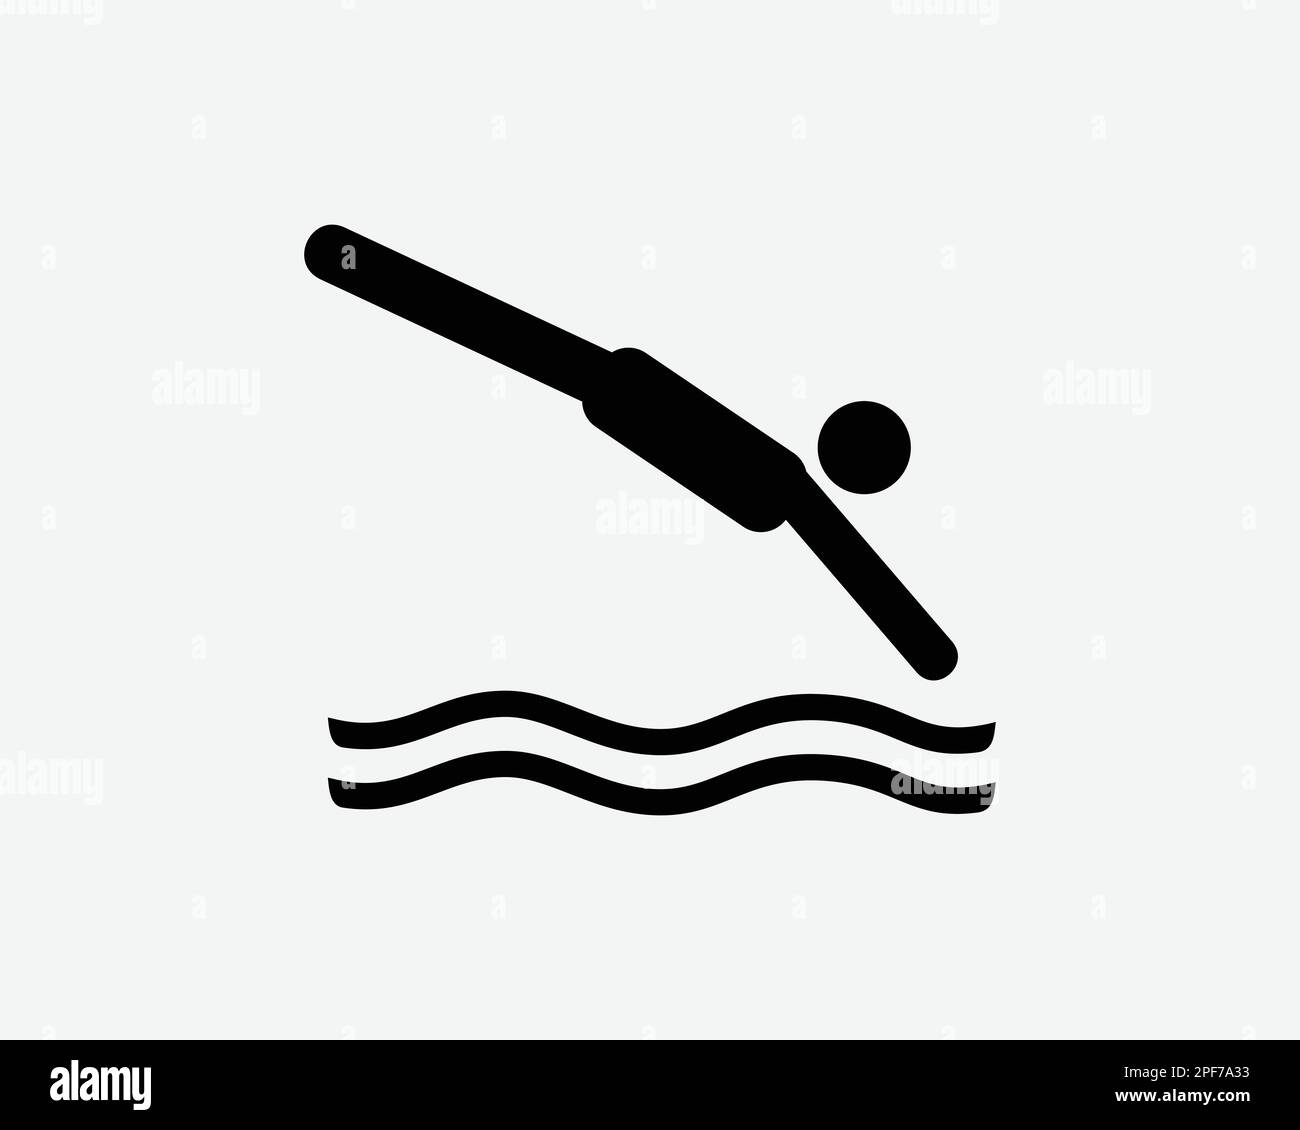 Immersione icona uomo immersione Jump Jumping Jumping in acqua piscina Nuoto Vector Black White Silhouette simbolo segno grafico clipart Illustrazione Pittogramma Pittogr Illustrazione Vettoriale